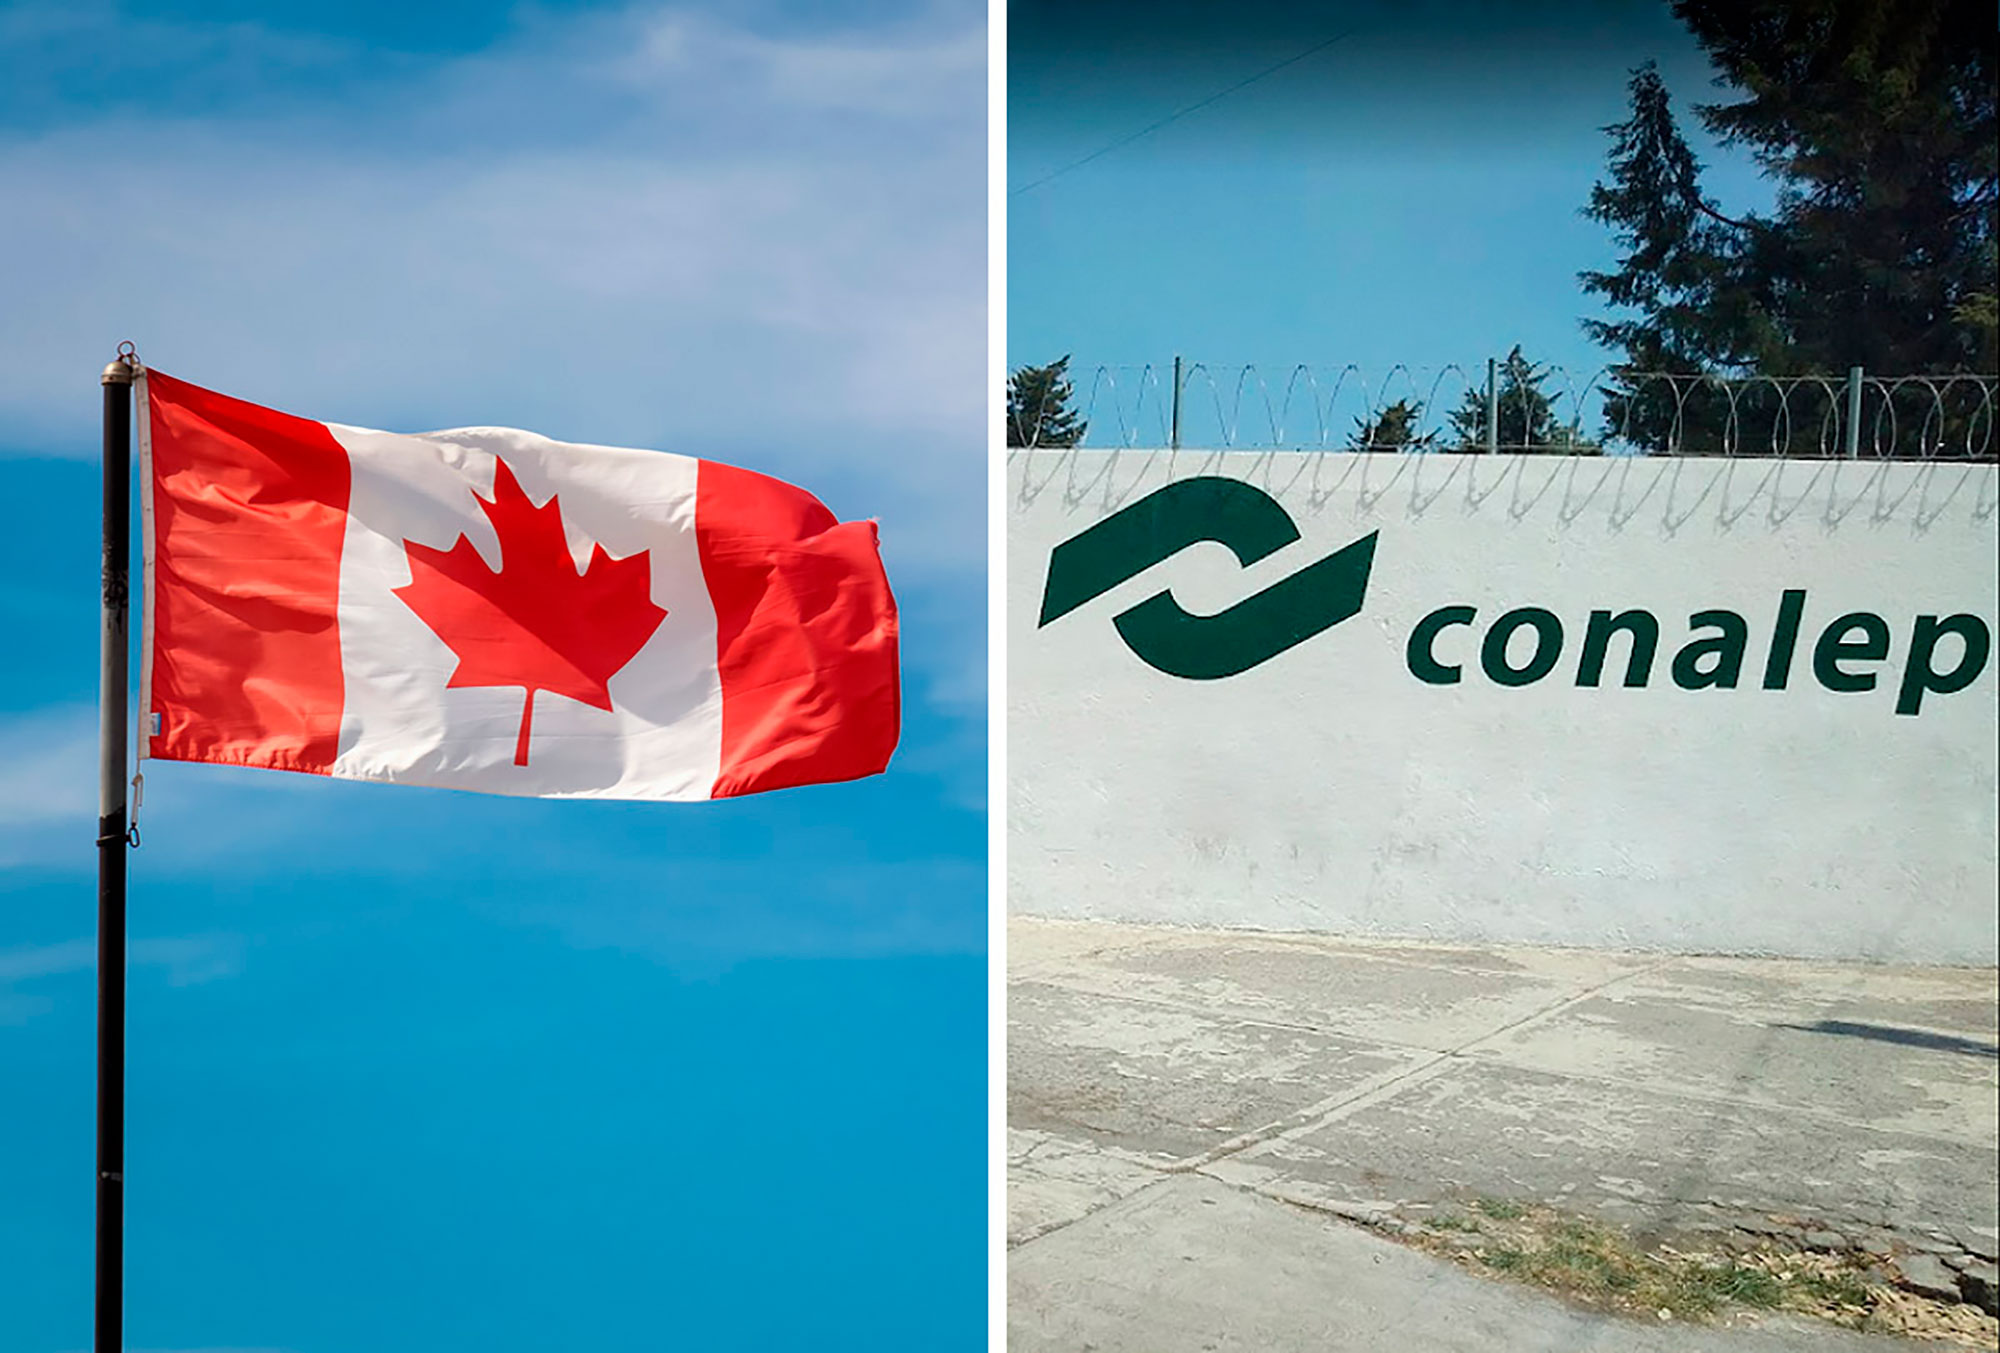 Canadá busca egresados del Conalep para trabajar y ofrece sueldo de 50 mil pesos al mes